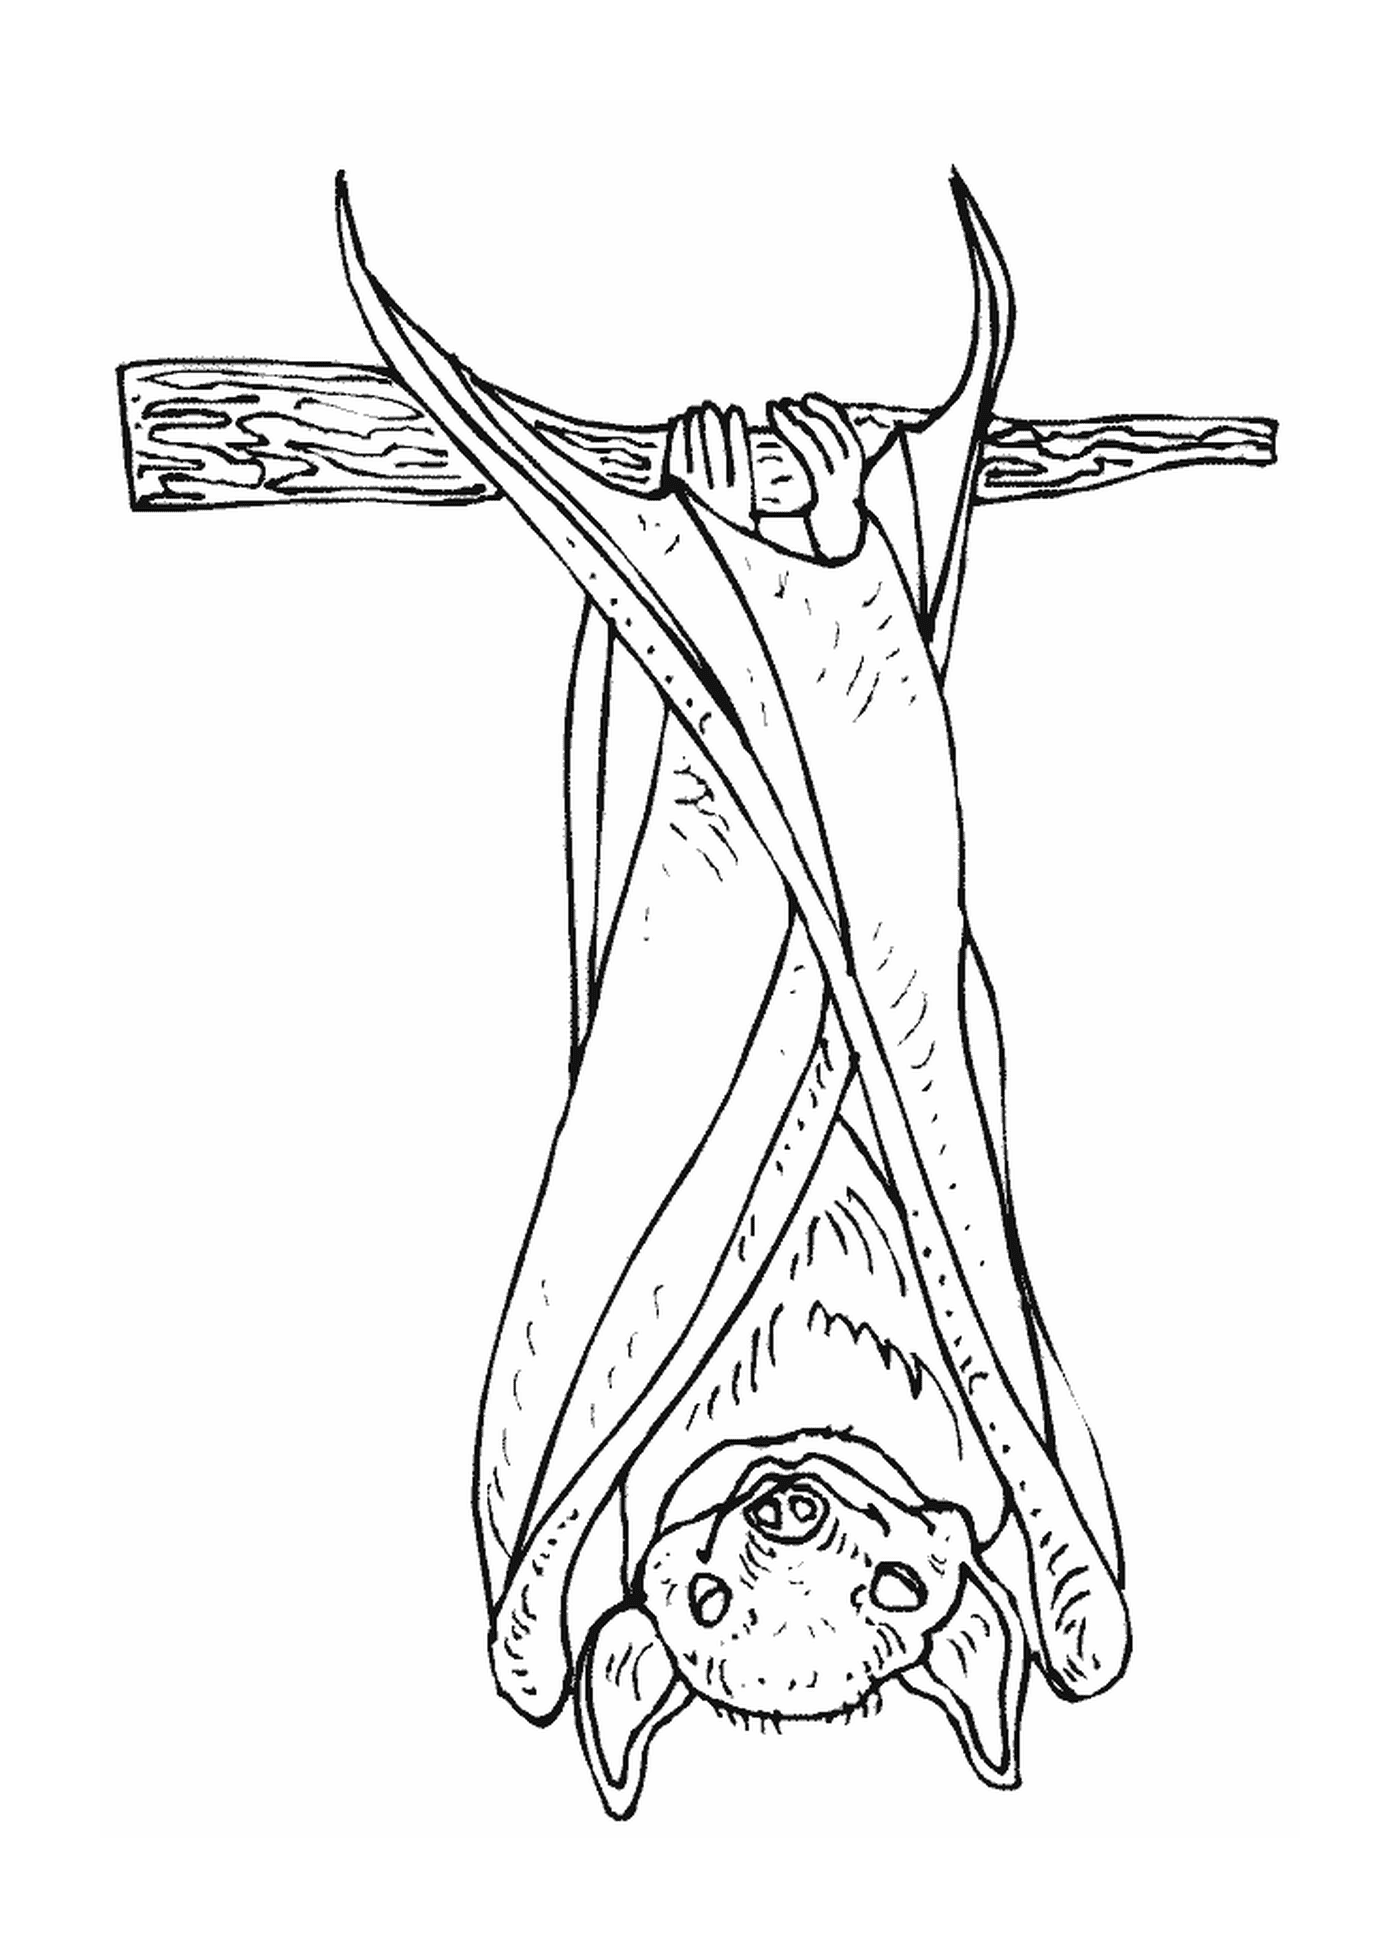  Person, die kopfüber an einem Kreuz hängt 